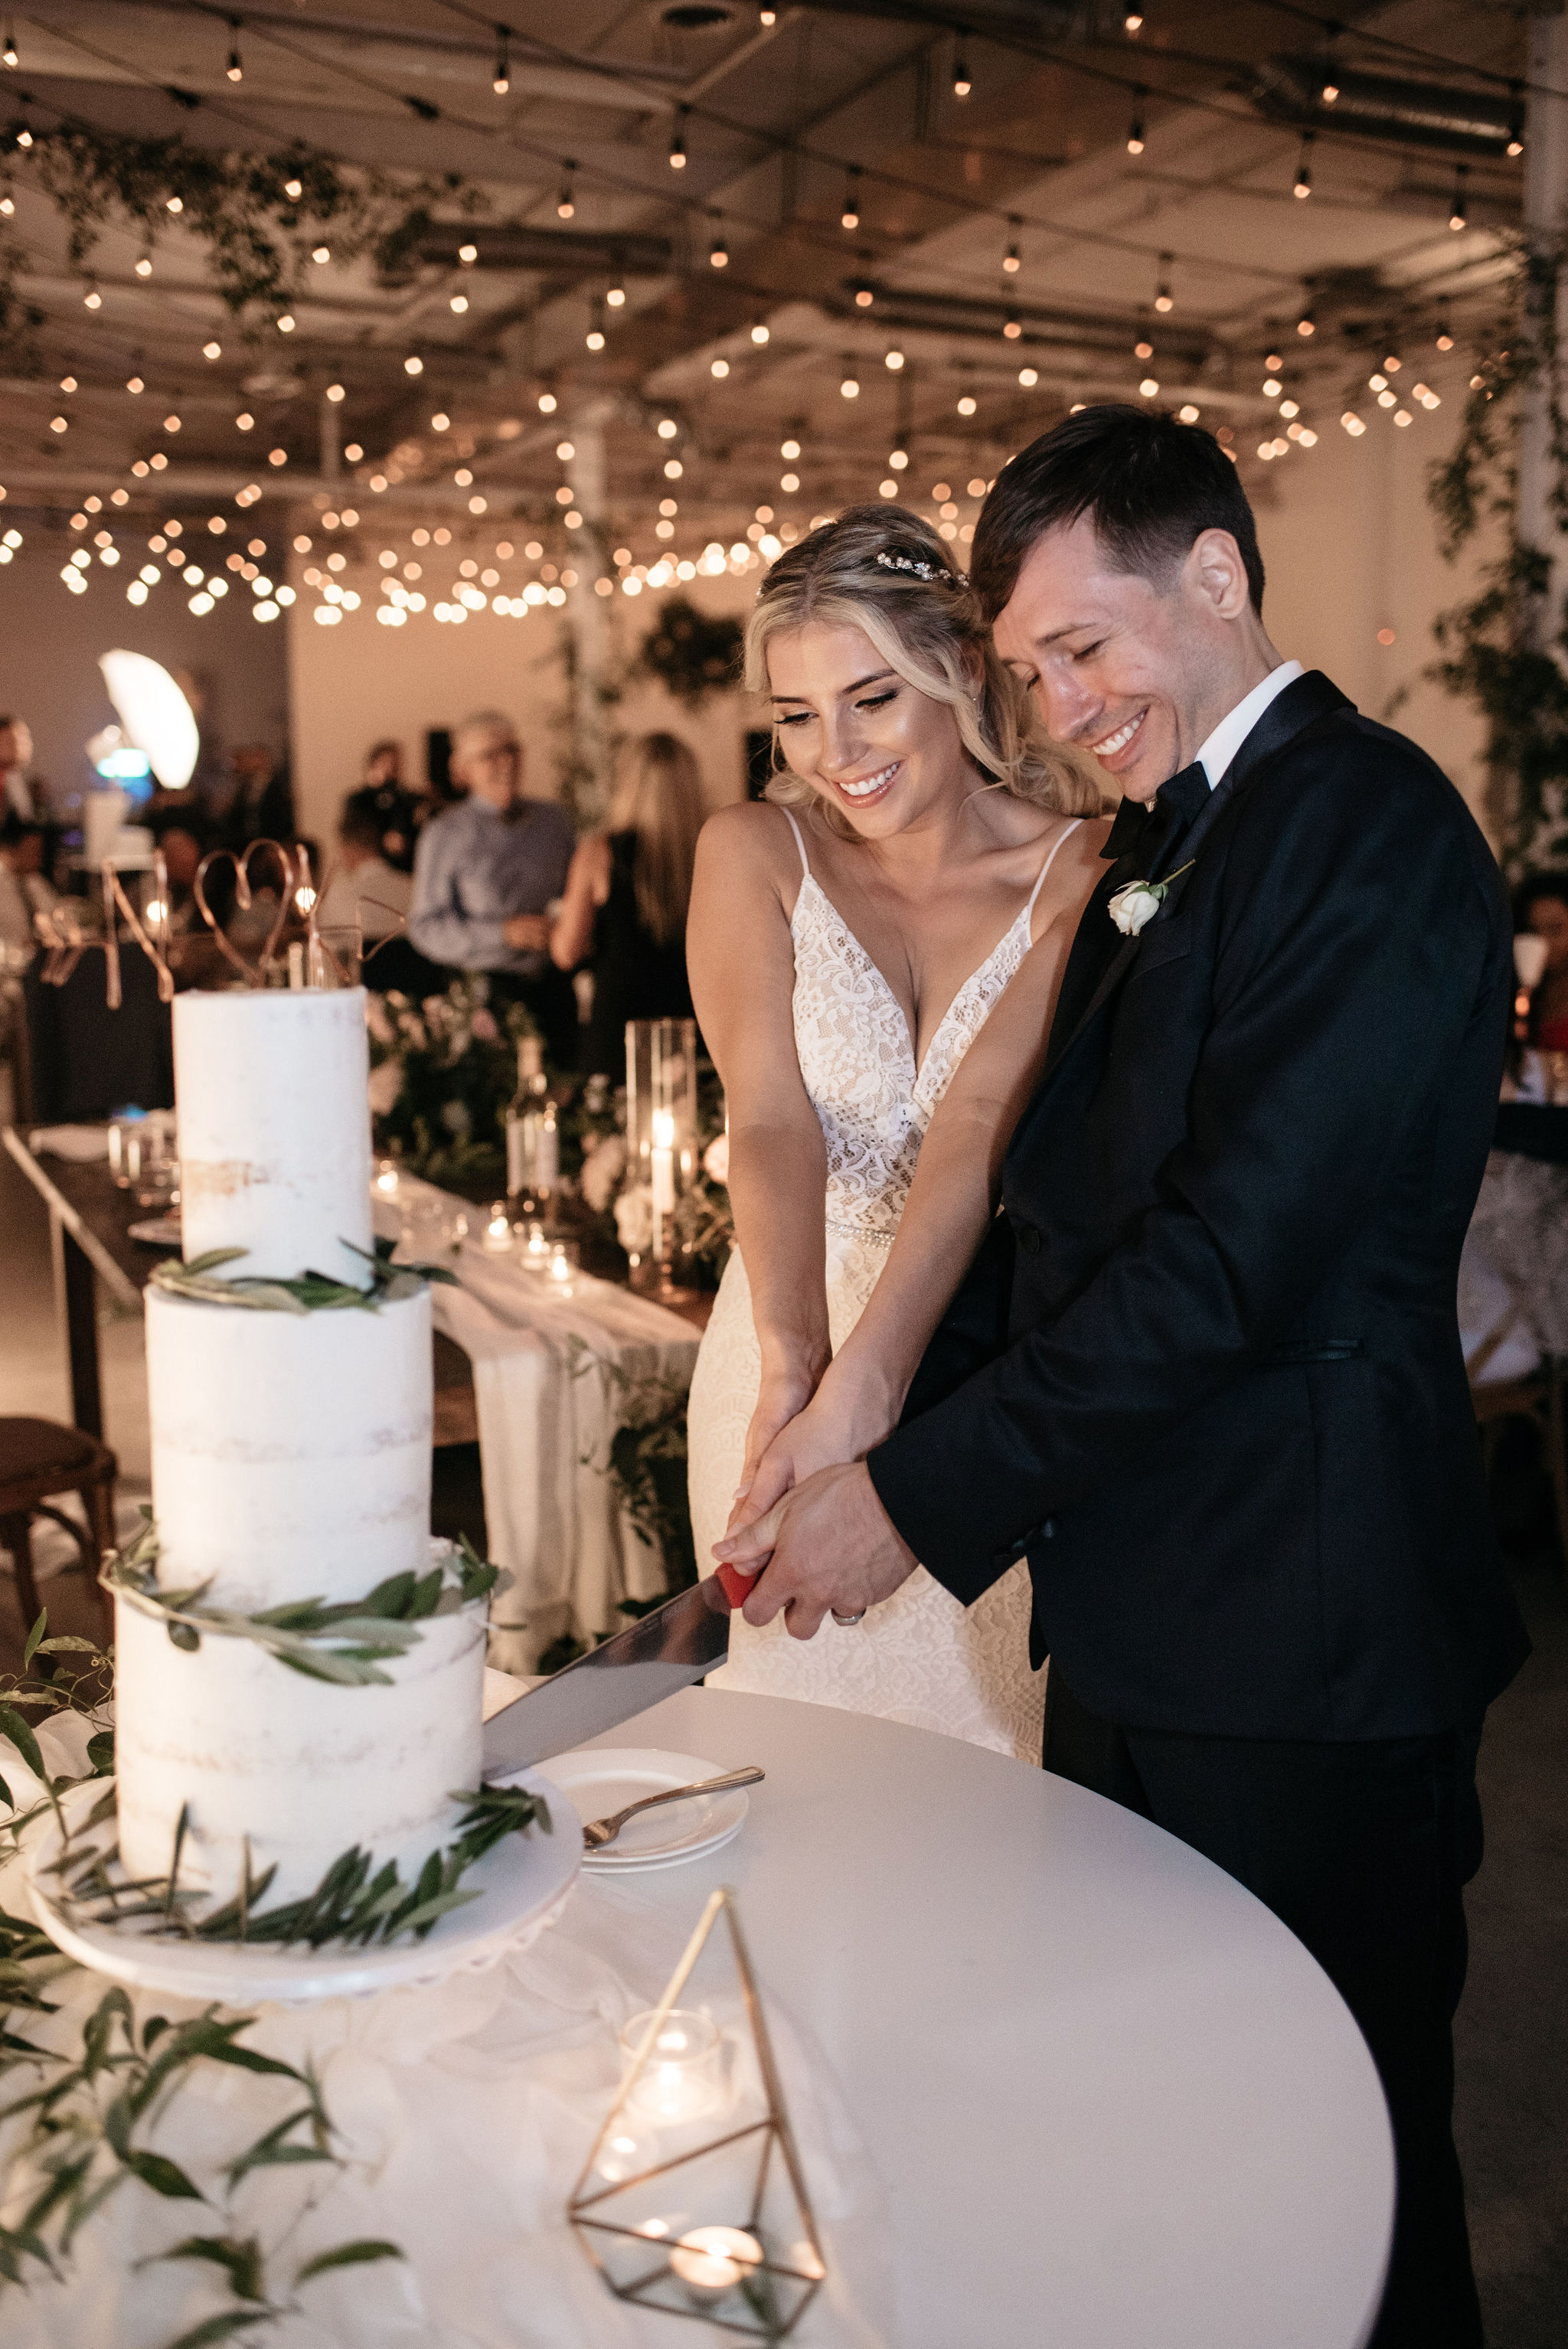 Cake Cutting Wedding Photos | Olive Photography Toronto